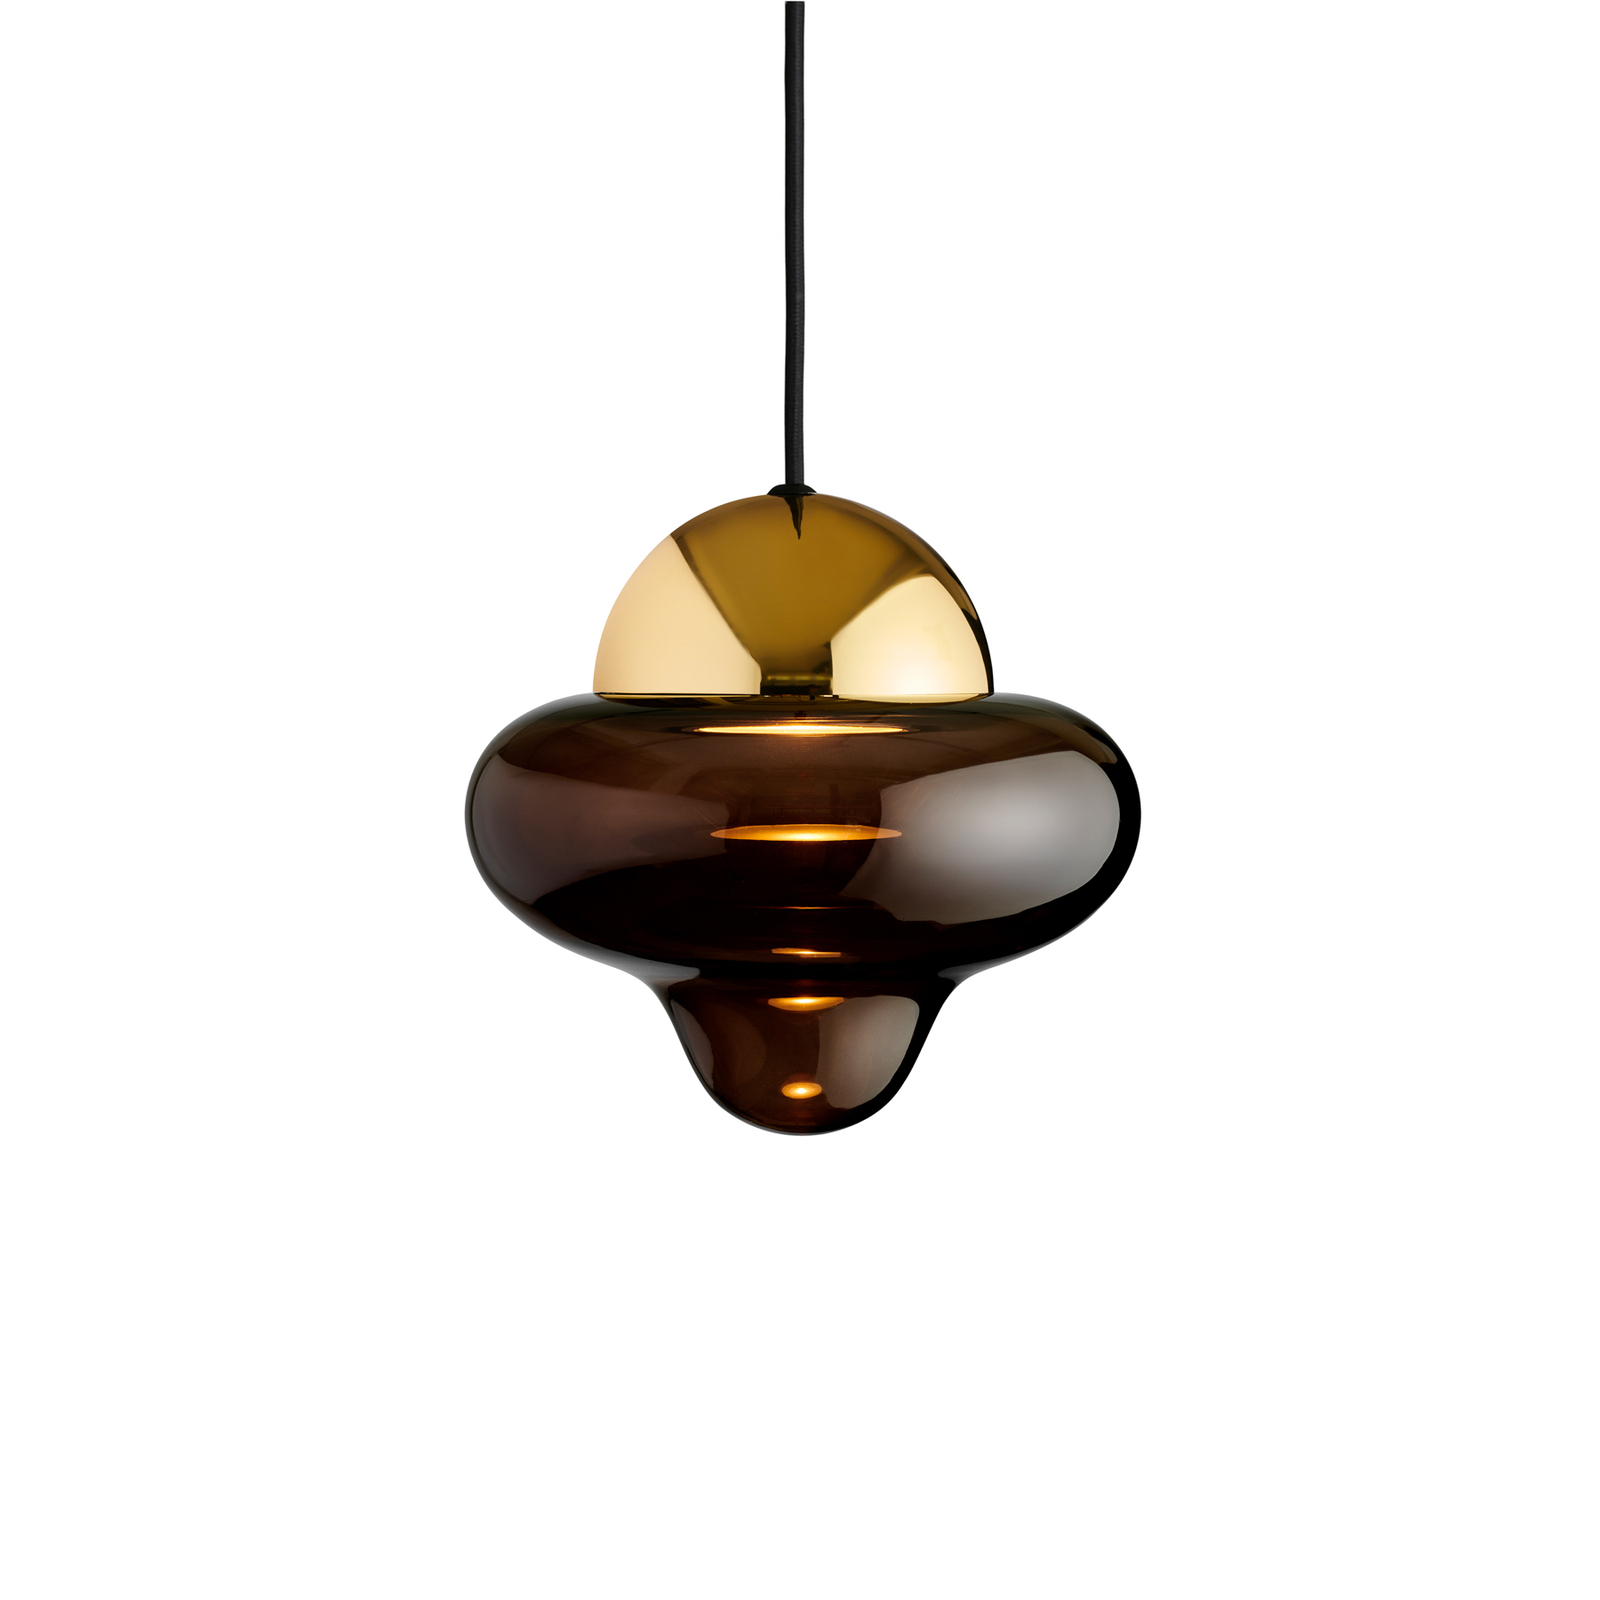 Suspension LED Nutty, brun / doré, Ø 18,5 cm, verre